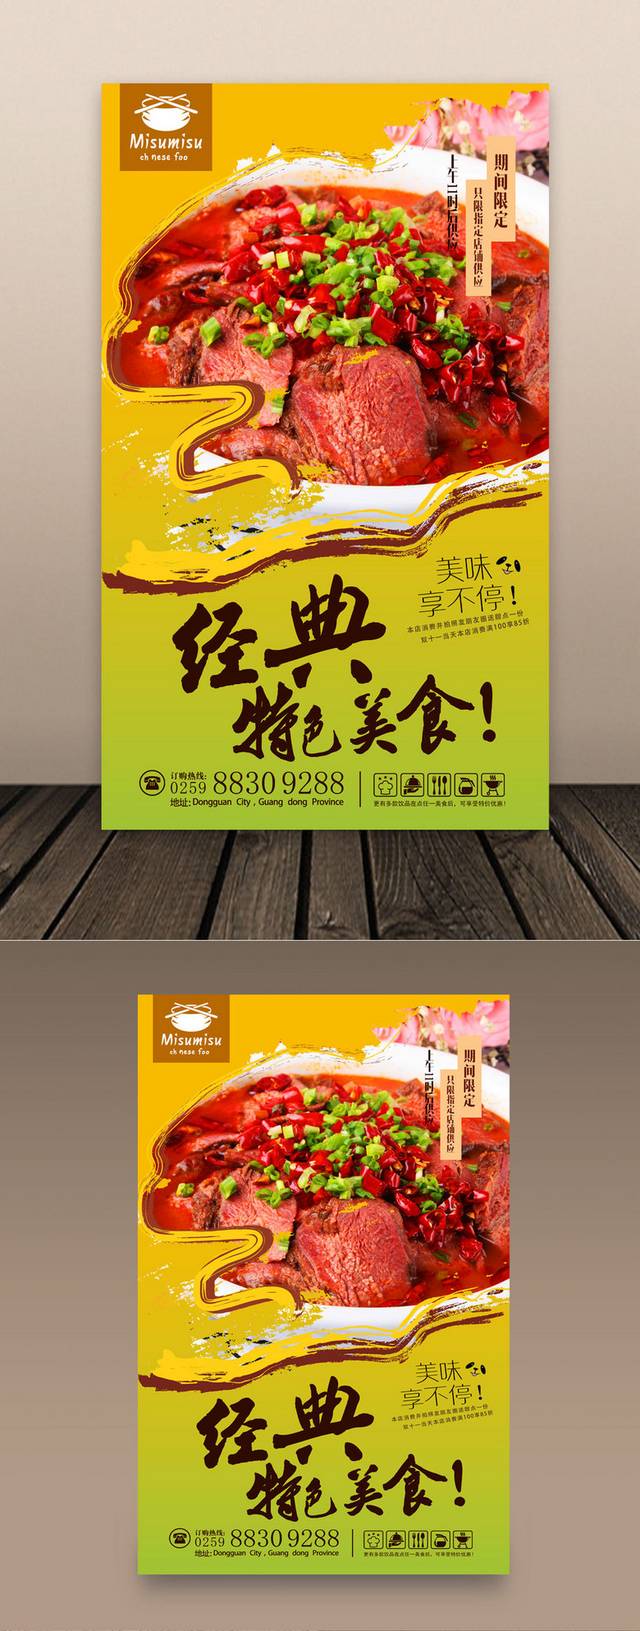 中华传统美食海报设计欣赏